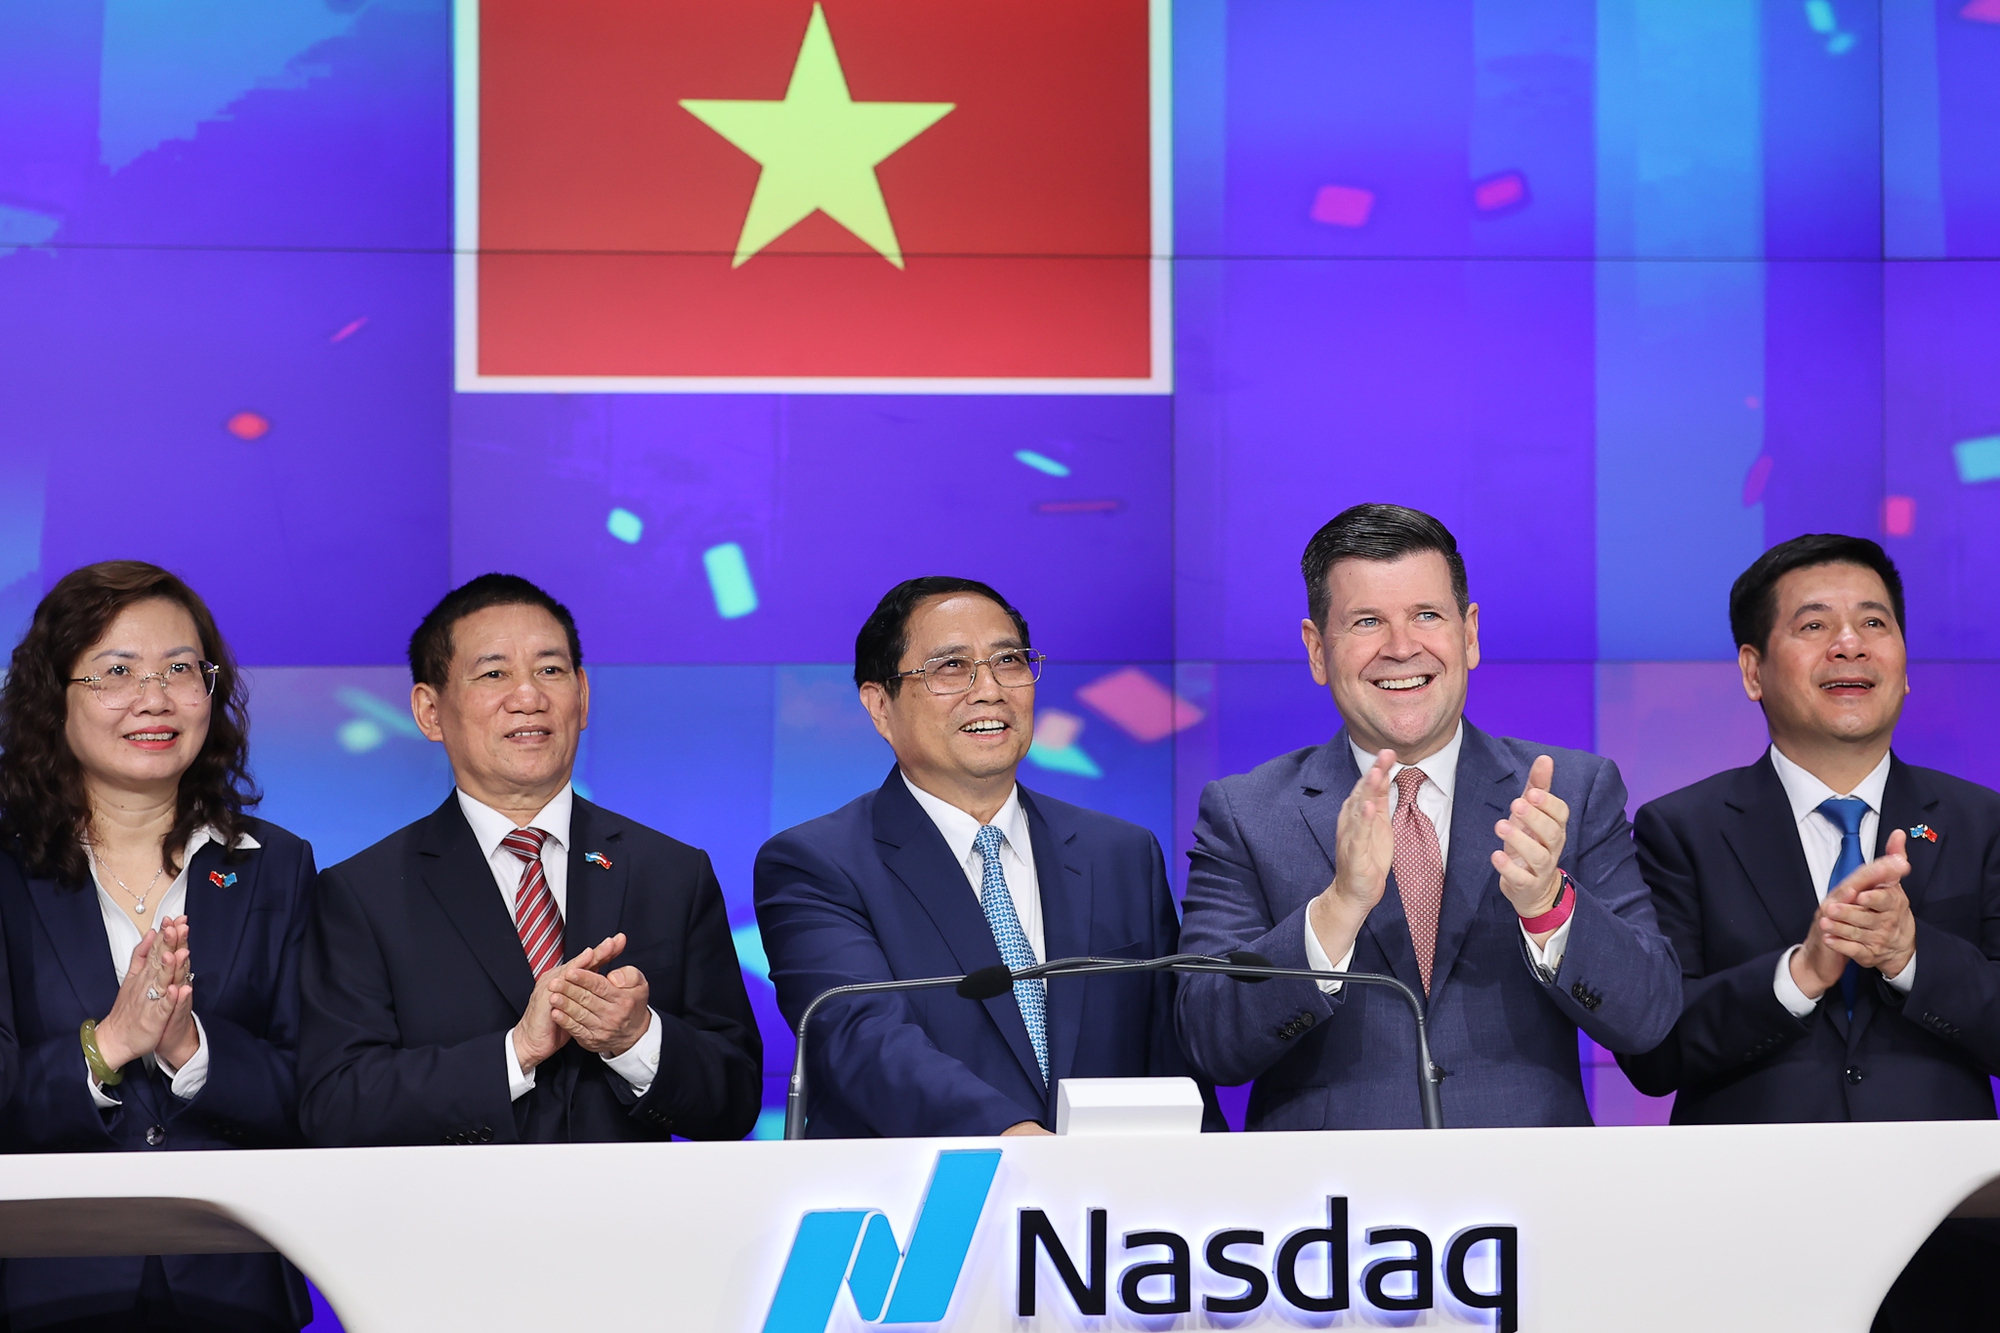 Thủ tướng rung chuông tại Sàn chứng khoán NASDAQ, kêu gọi các nhà đầu tư Hoa Kỳ - Ảnh 4.